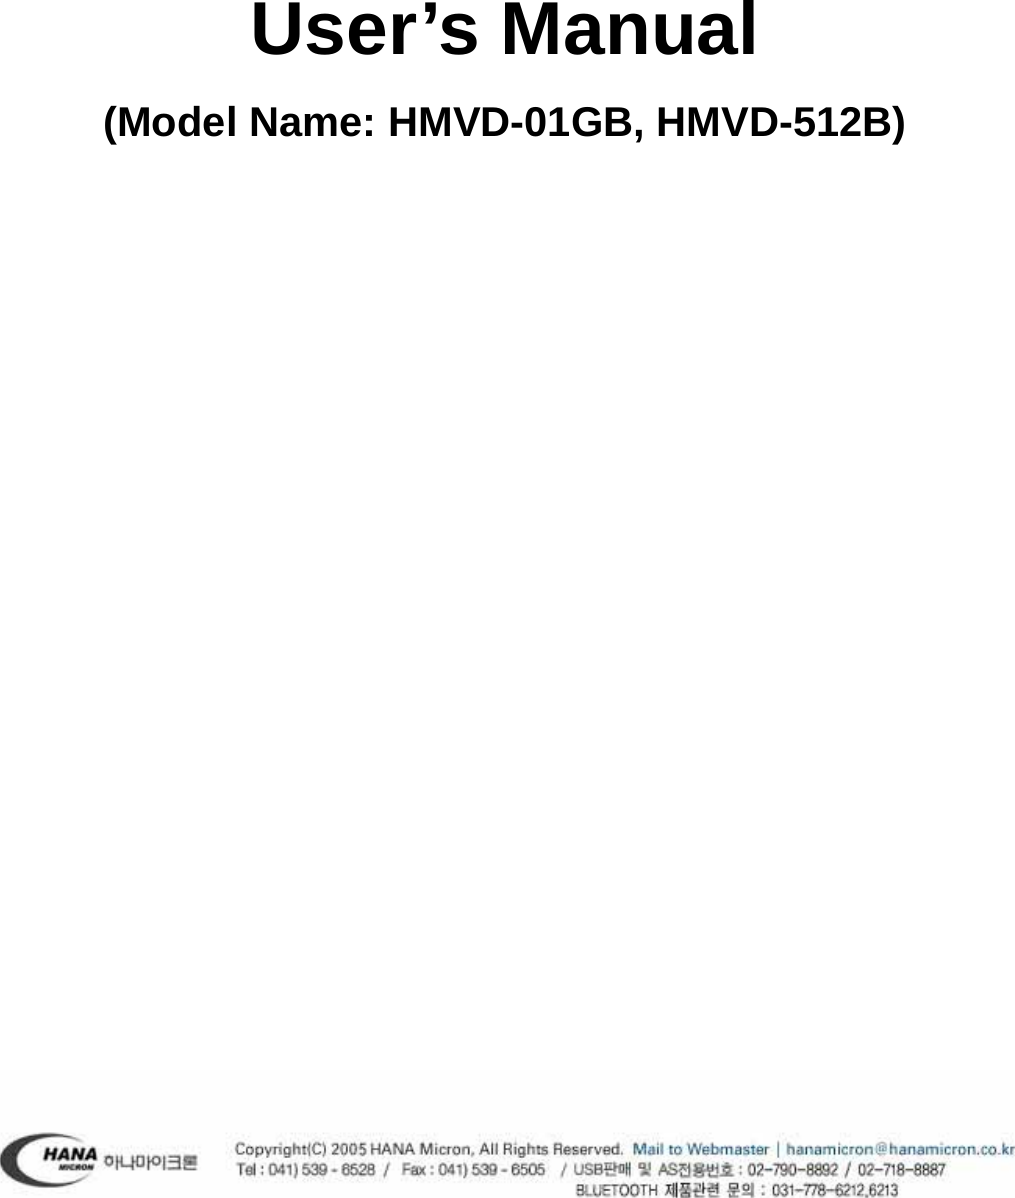     User’s Manual (Model Name: HMVD-01GB, HMVD-512B)             